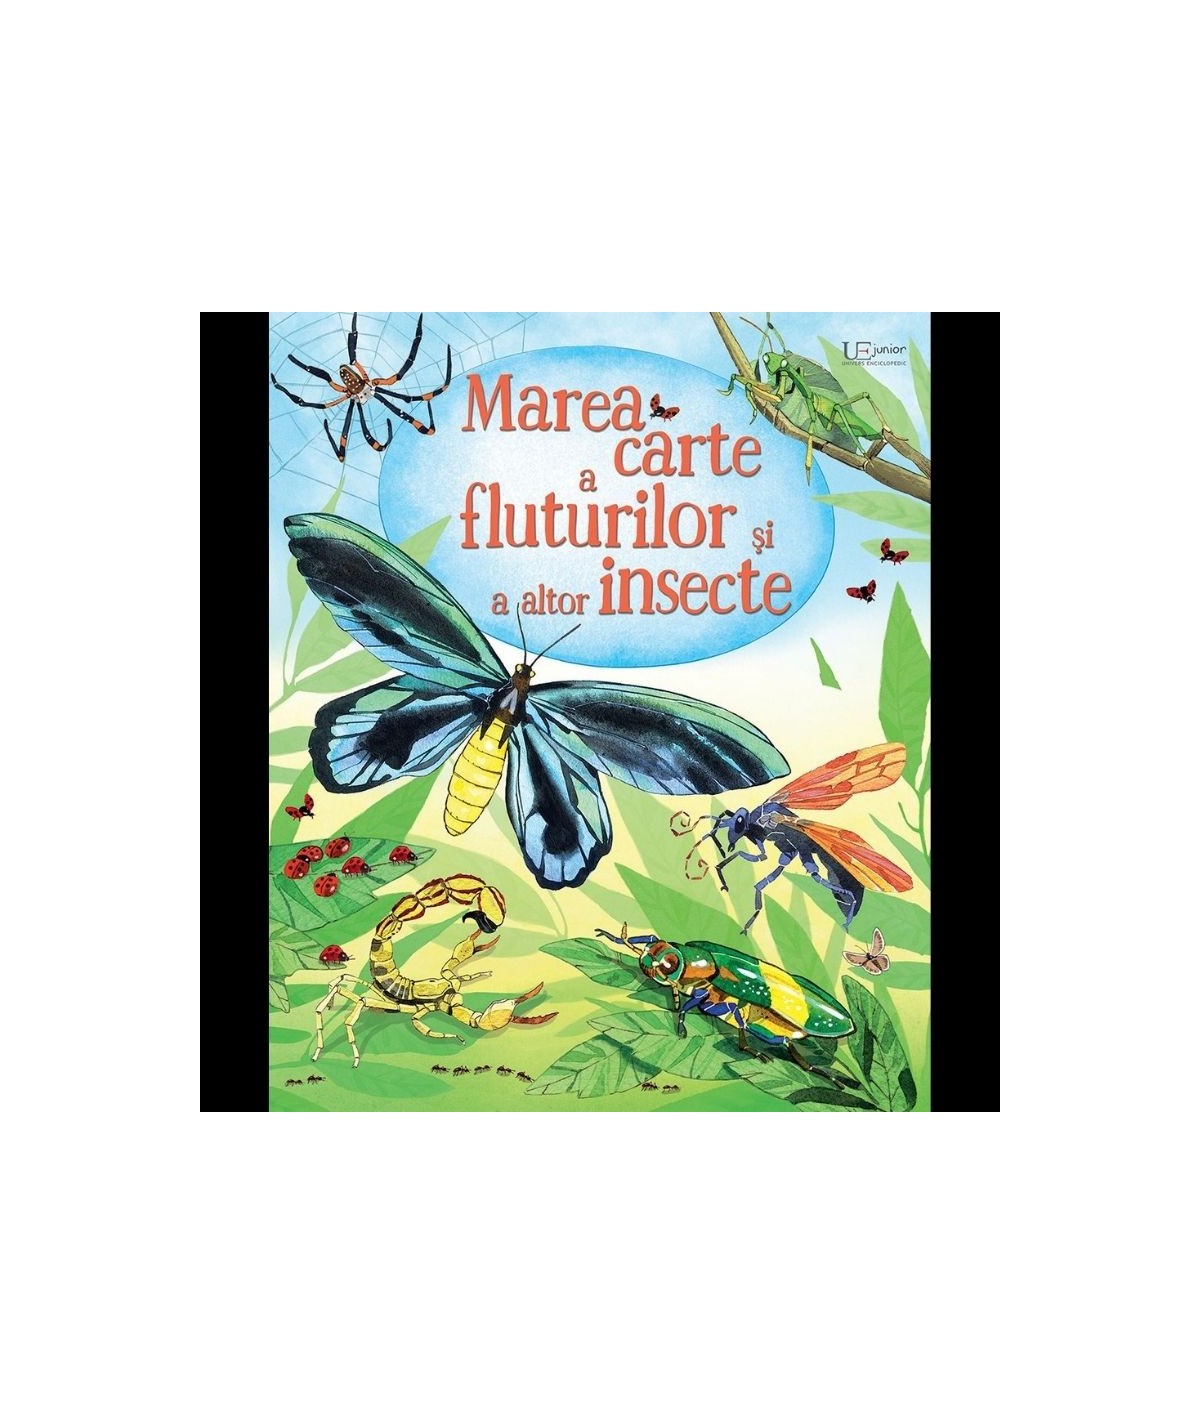 Plausible Insight puppet Marea a carte fluturilor si a altor insecte